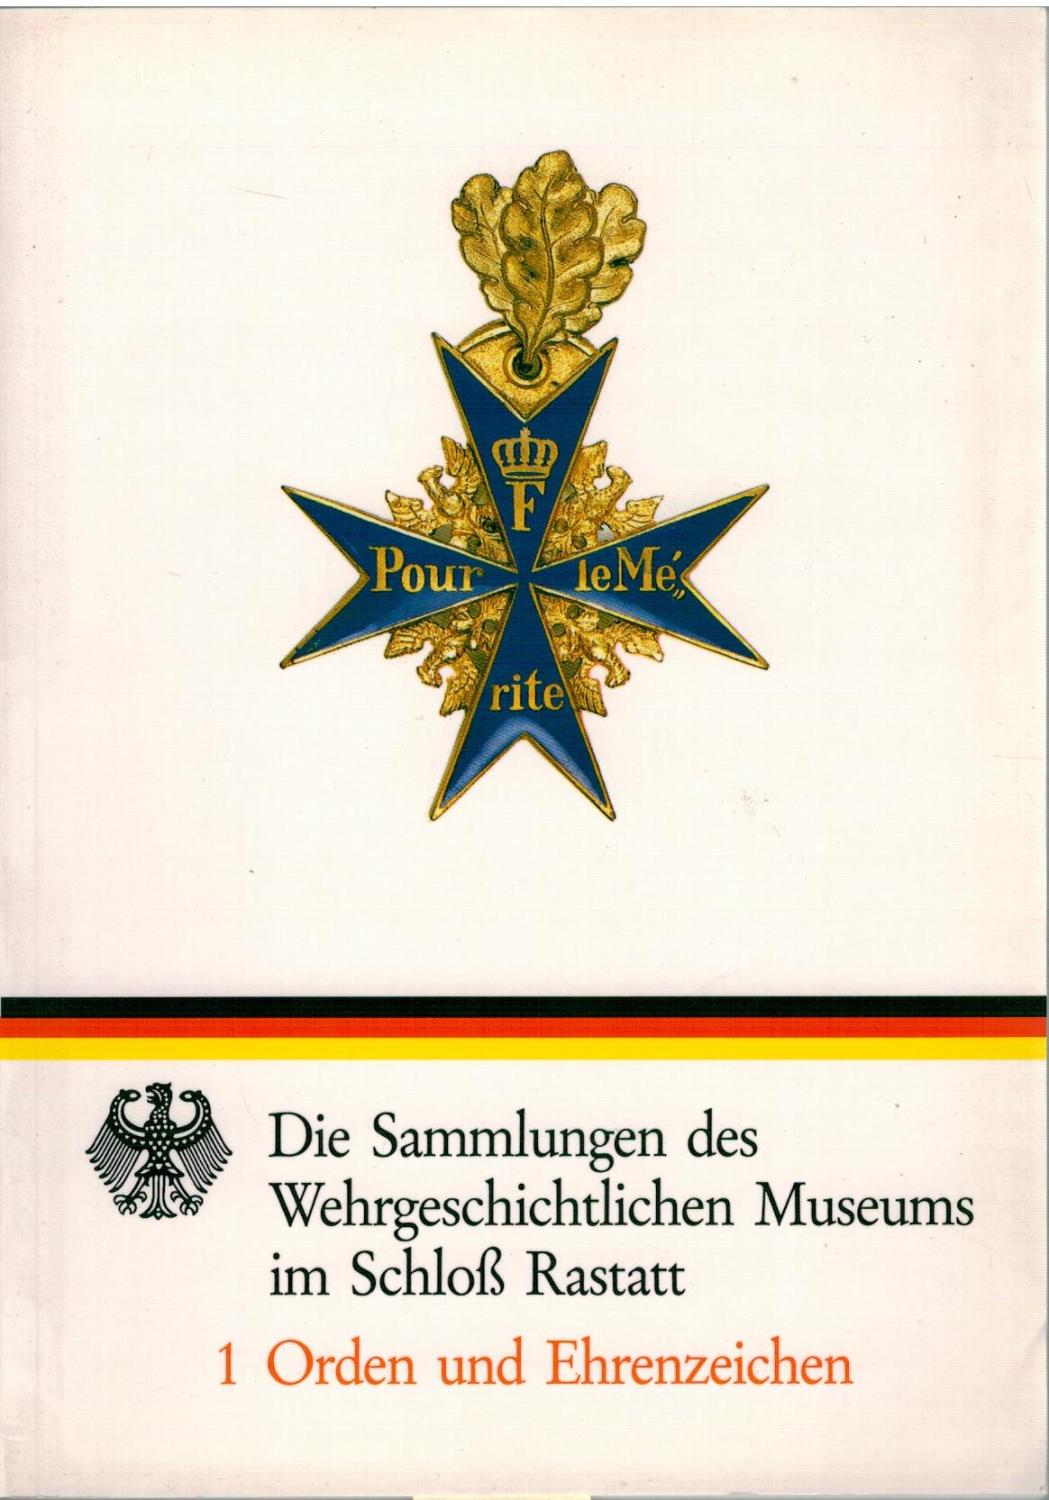 Die Sammlung des Wehrgeschichtlichen Museums im Schloß Rastatt, 1 Orden und Ehrenzeichen